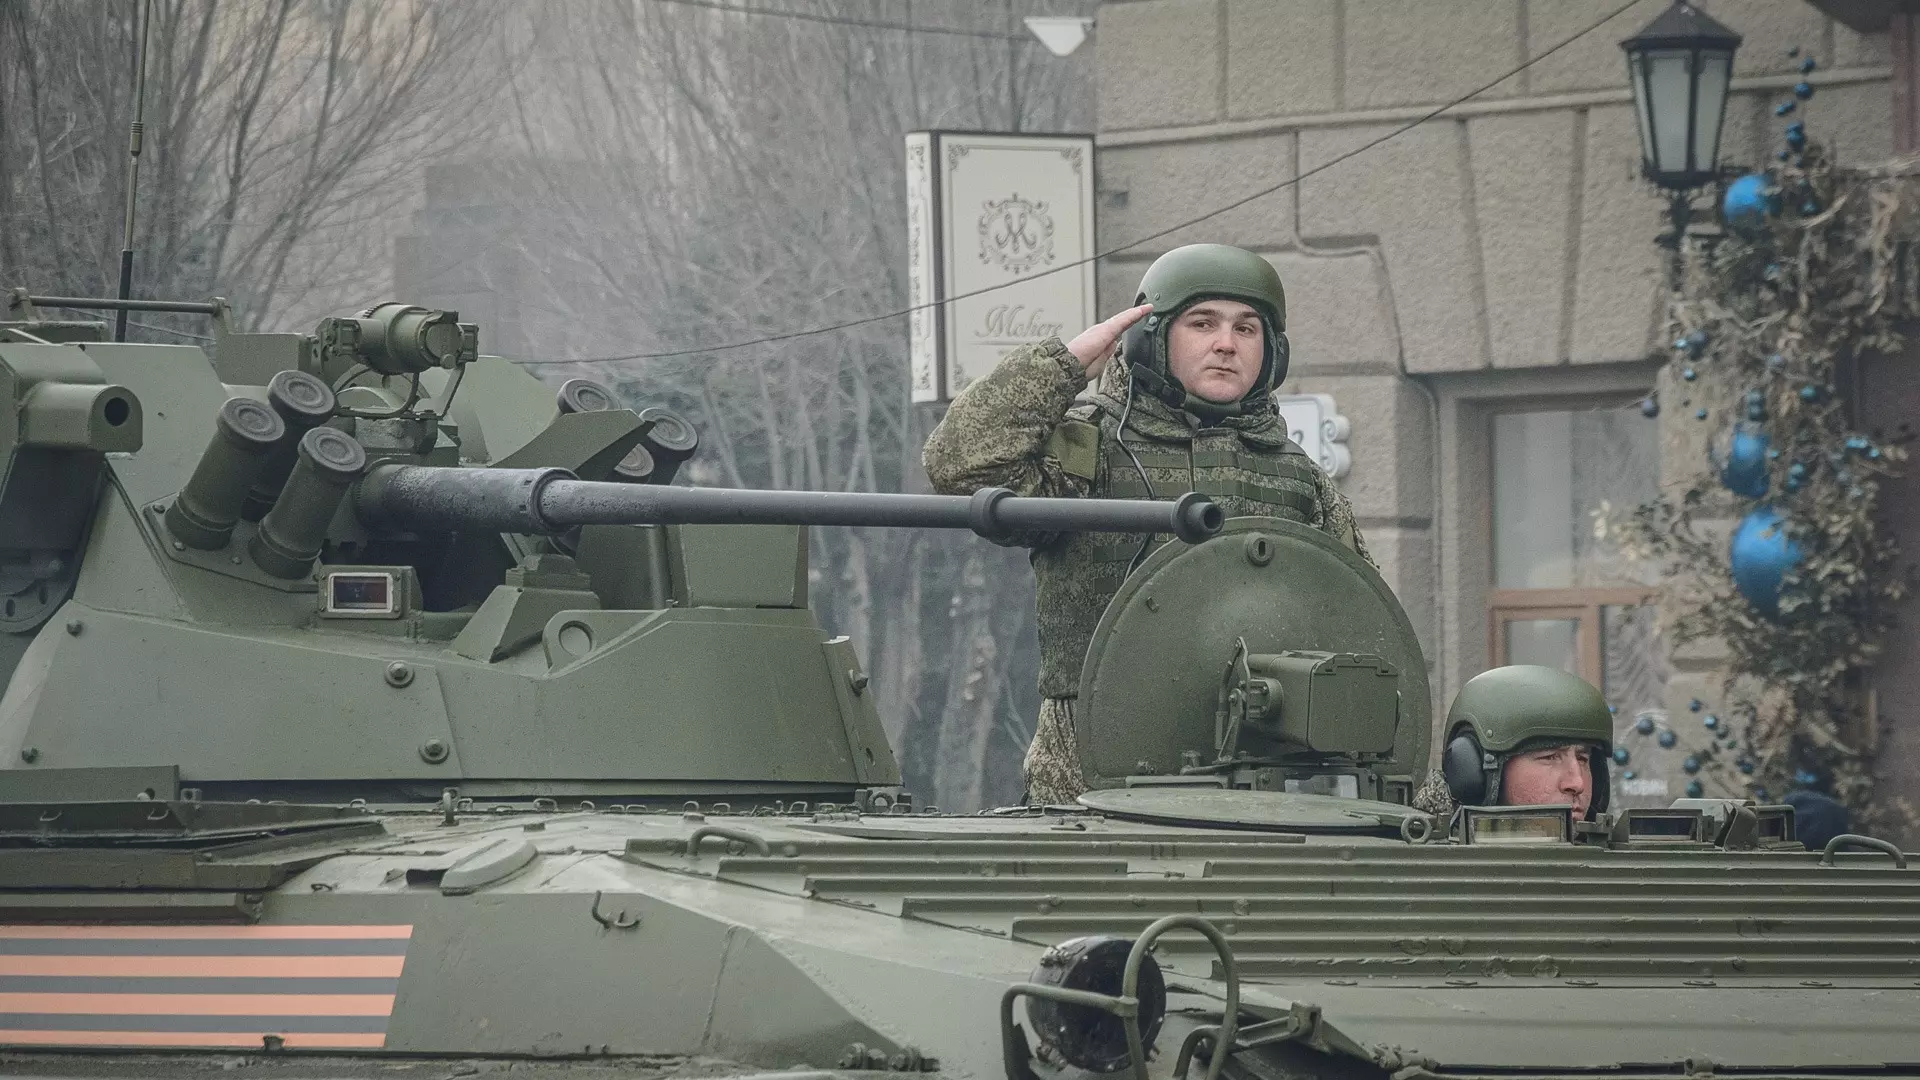 Вице-премьер Чернышенко посетил Казанское высшее танковое училище